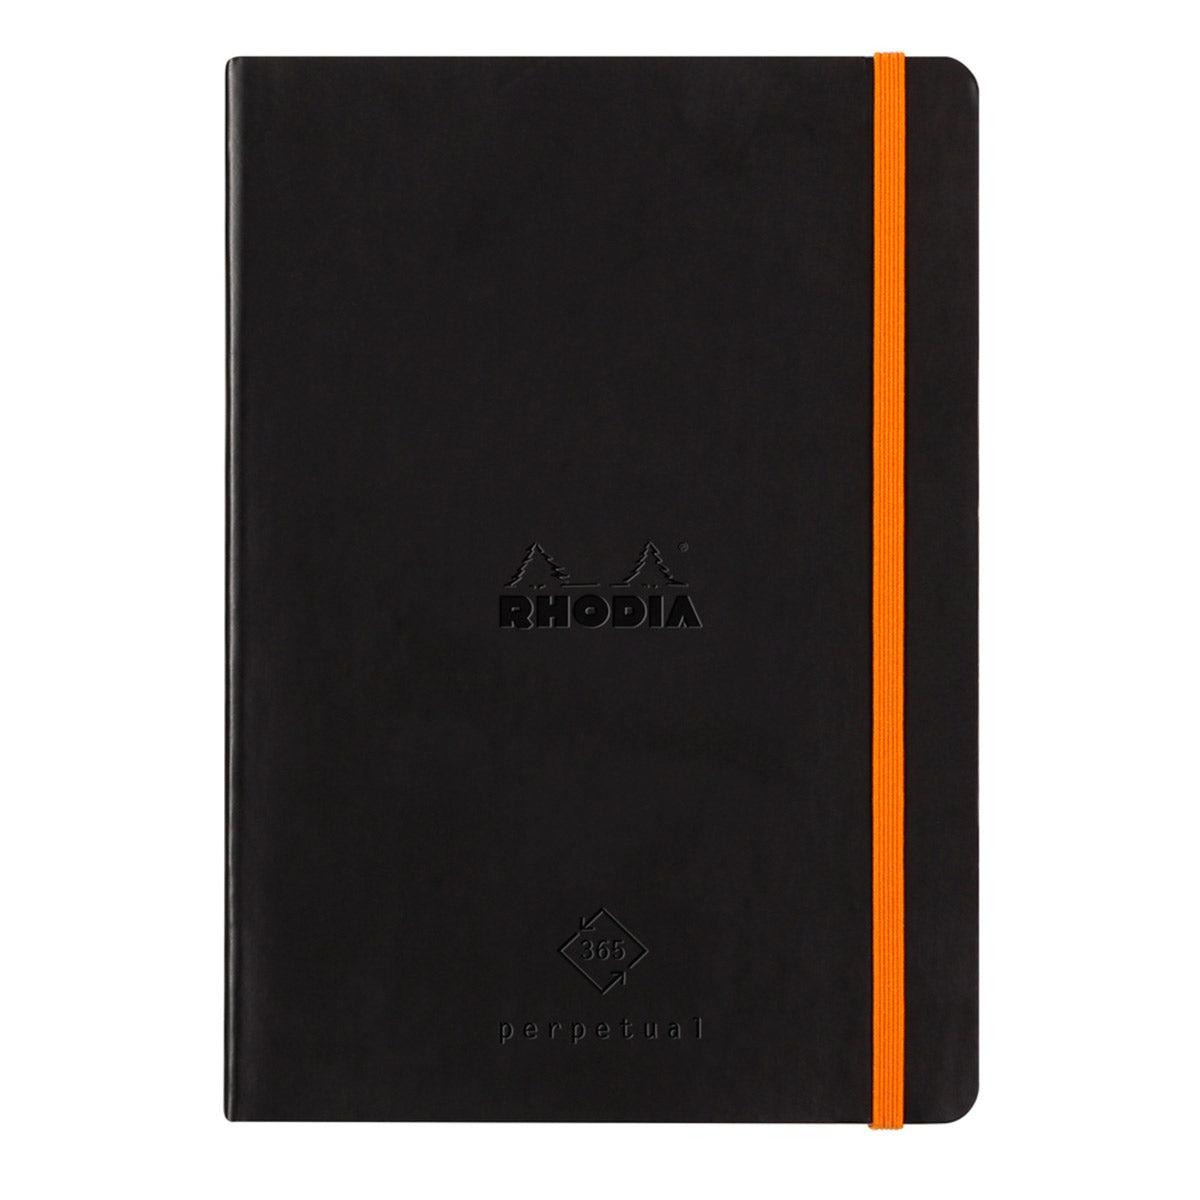 Rhodia - Perpetual Kalender A5, schwarz